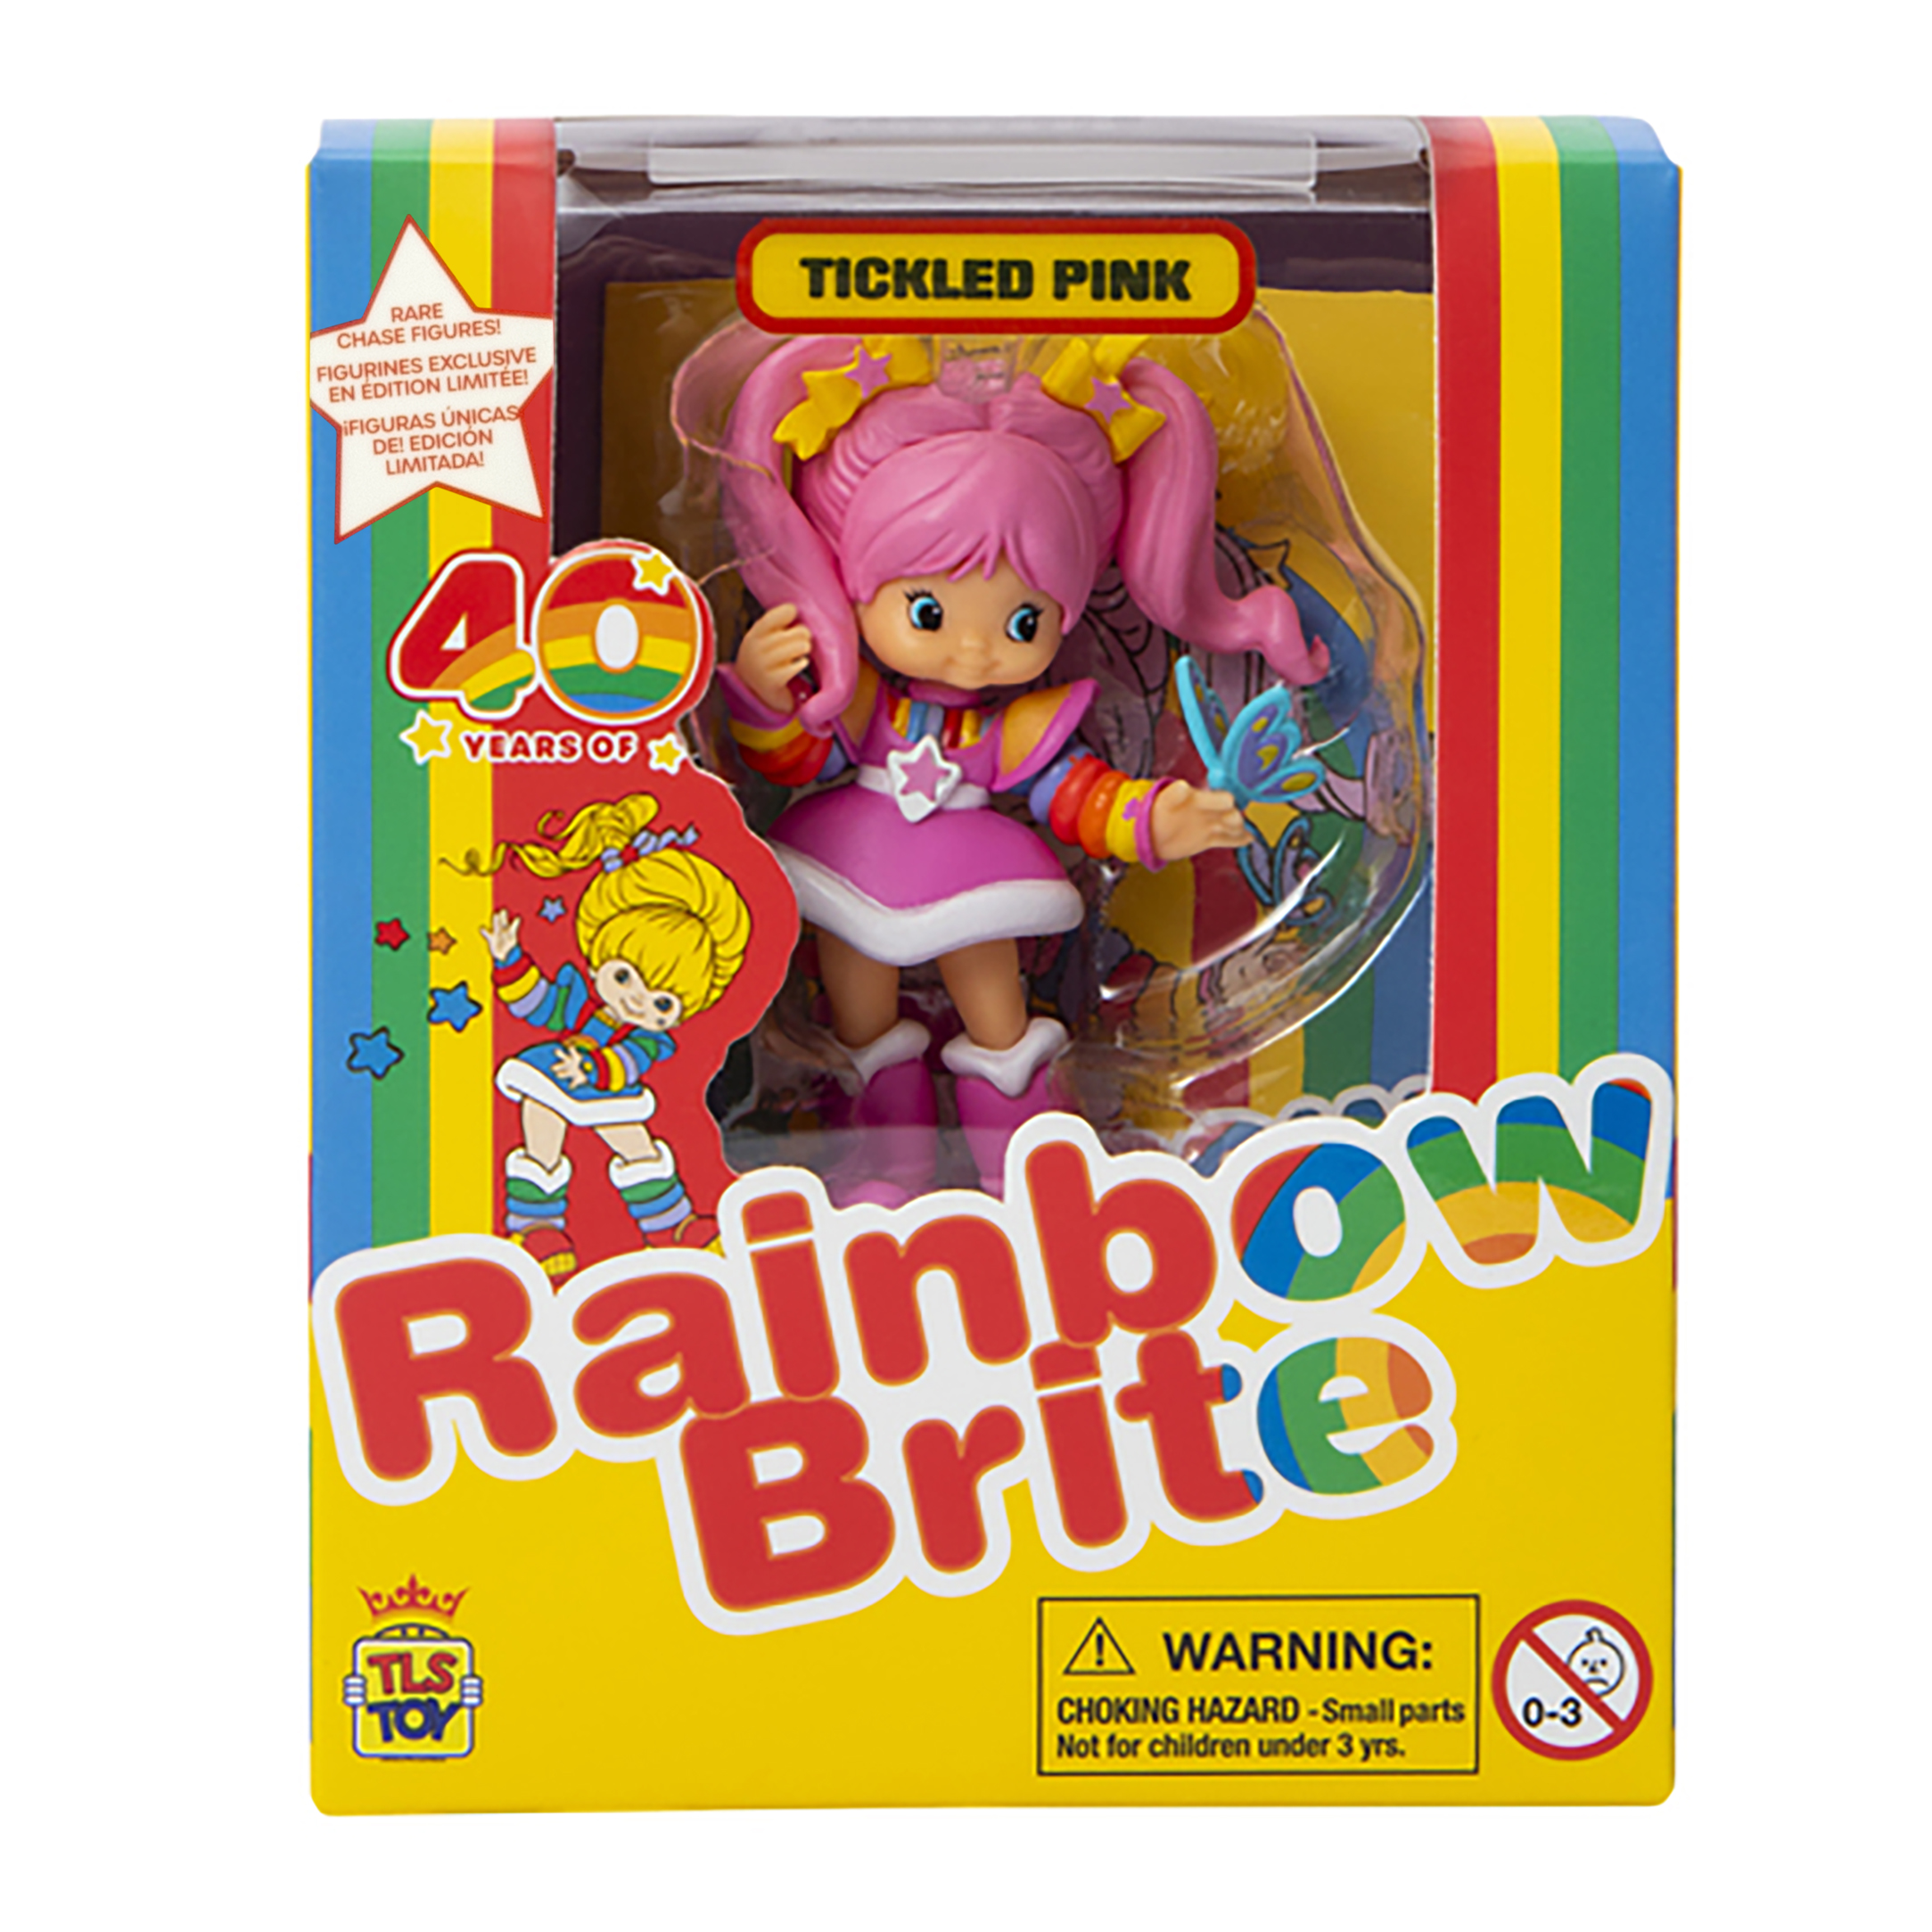 5.5-INCH RAINBOW BRITE FASHION DOLLS - The Toy Book